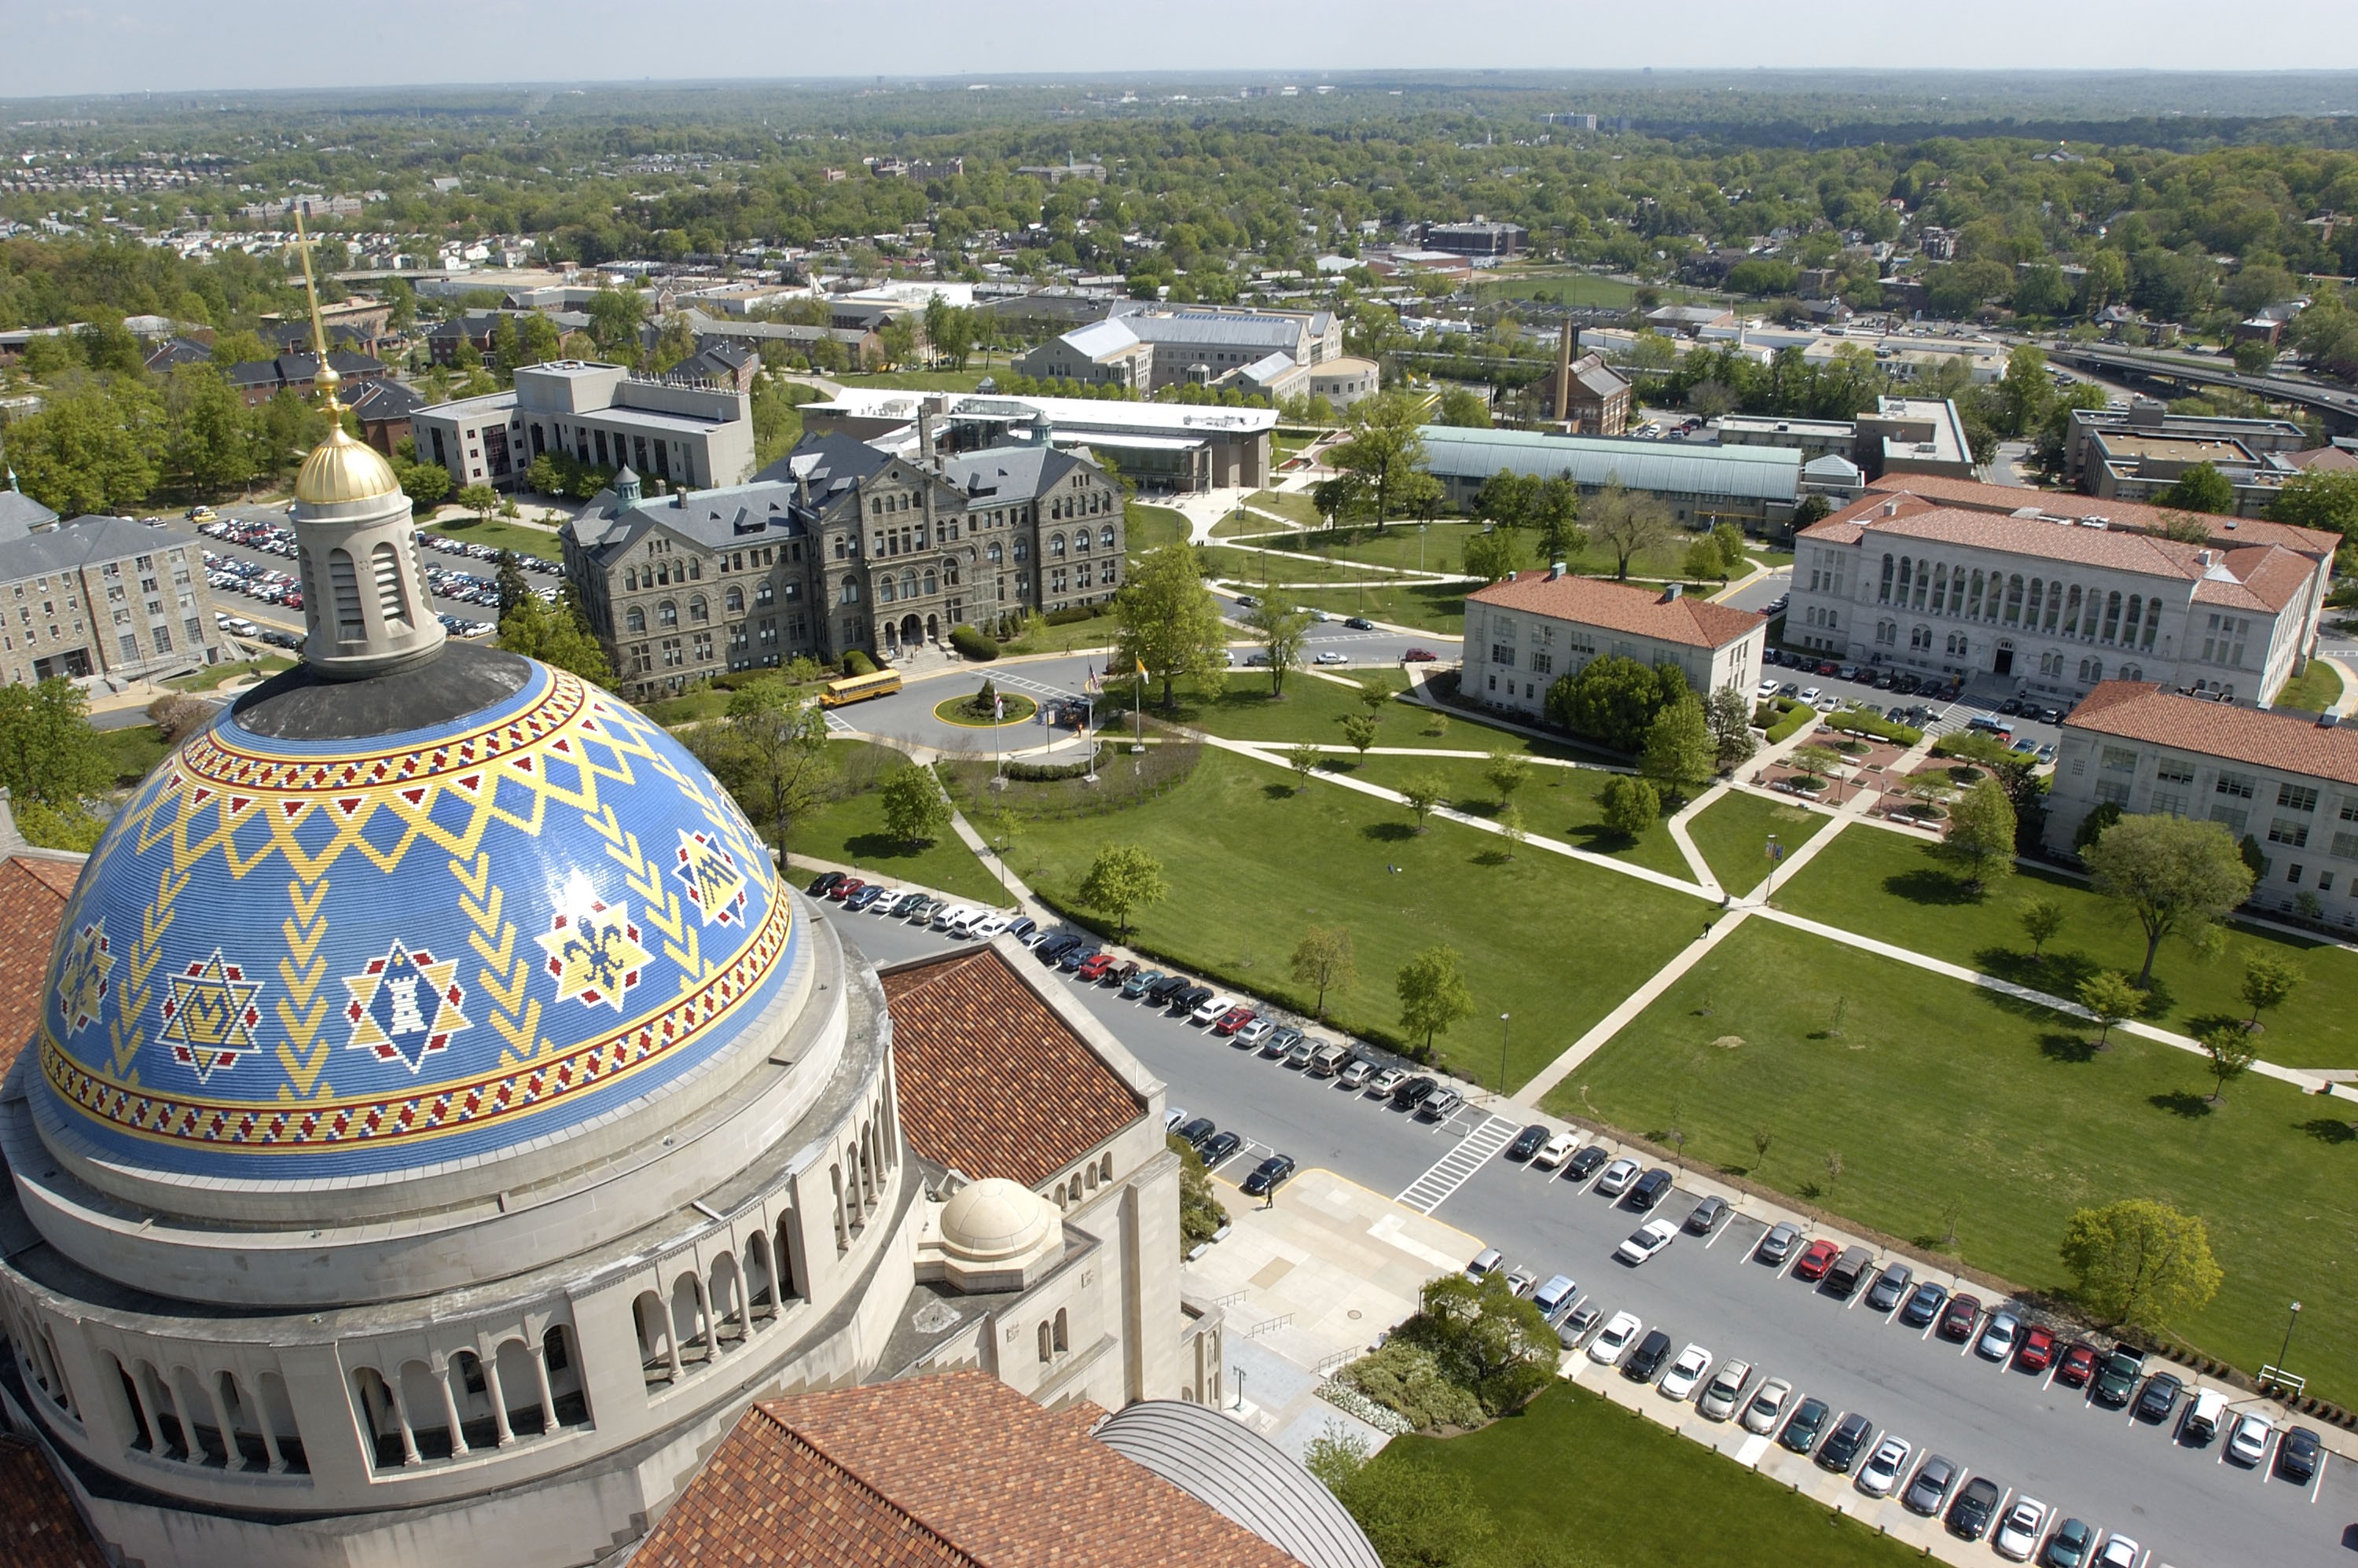 Image of campus